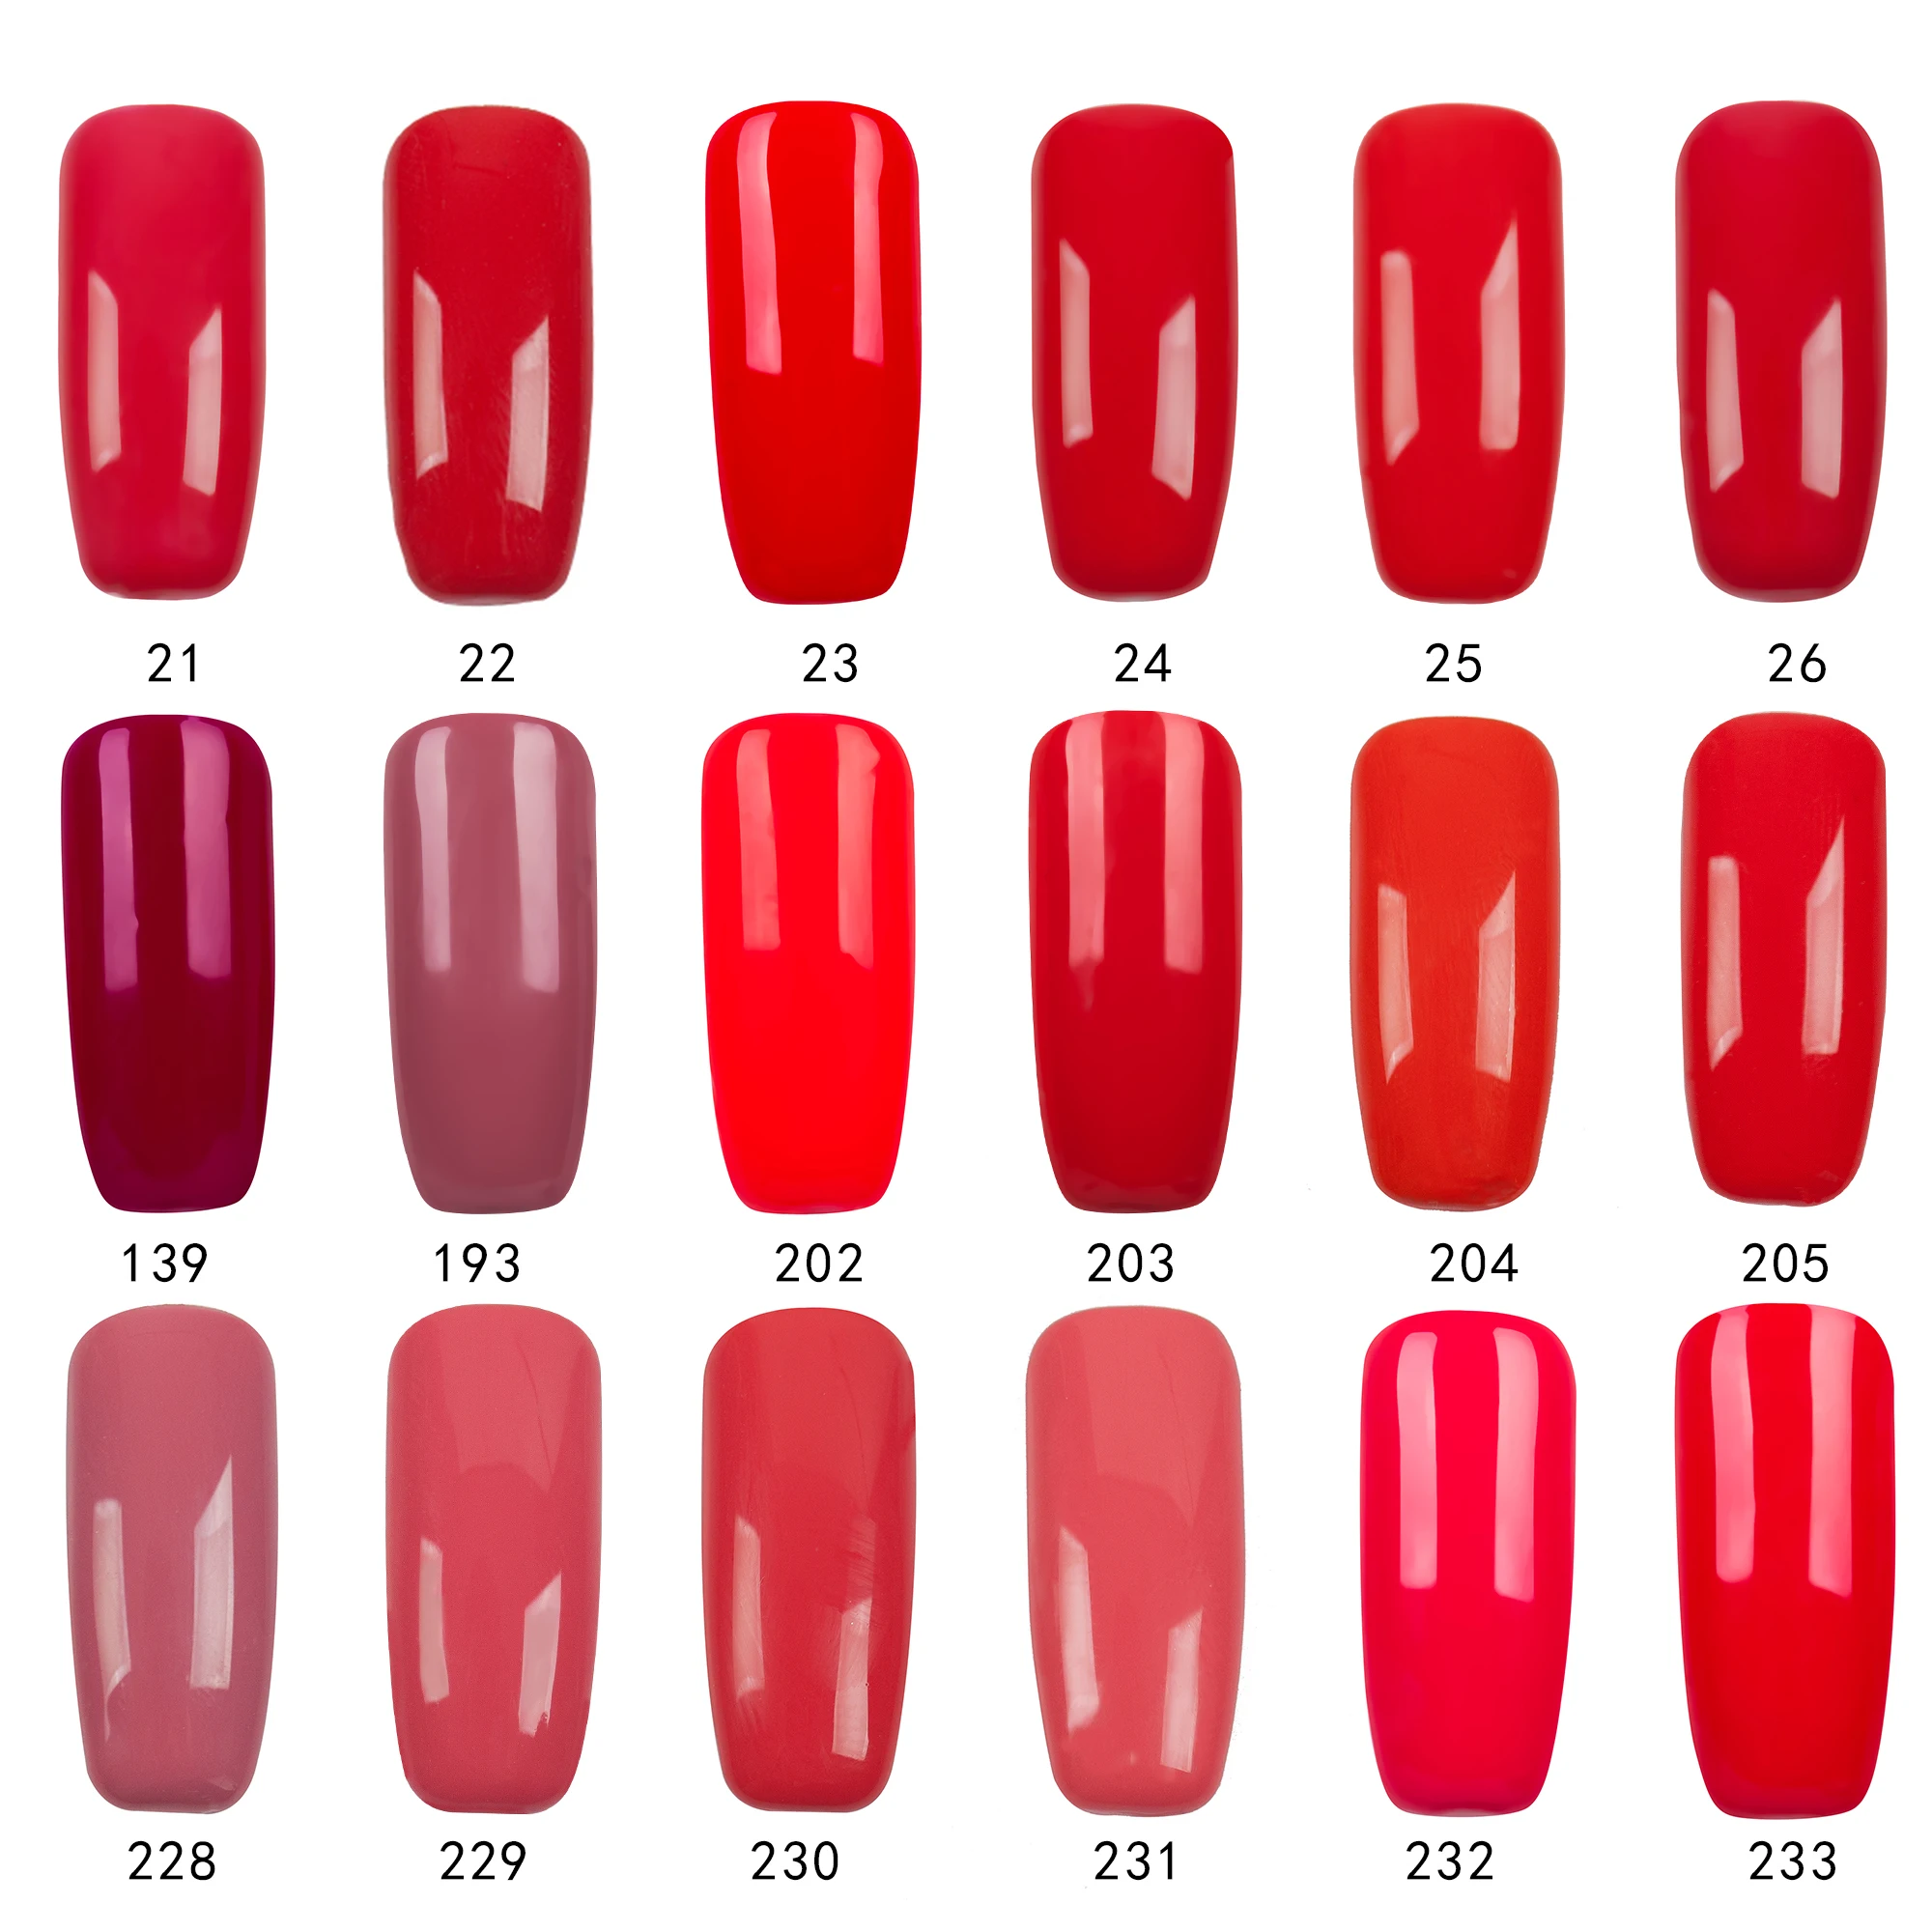 Гель-лак для ногтей girl2GIRL, 8 мл, замачиваемый УФ-гель для ногтей, косметика для дизайна ногтей, маникюрный Гель-лак для ногтей, красный набор